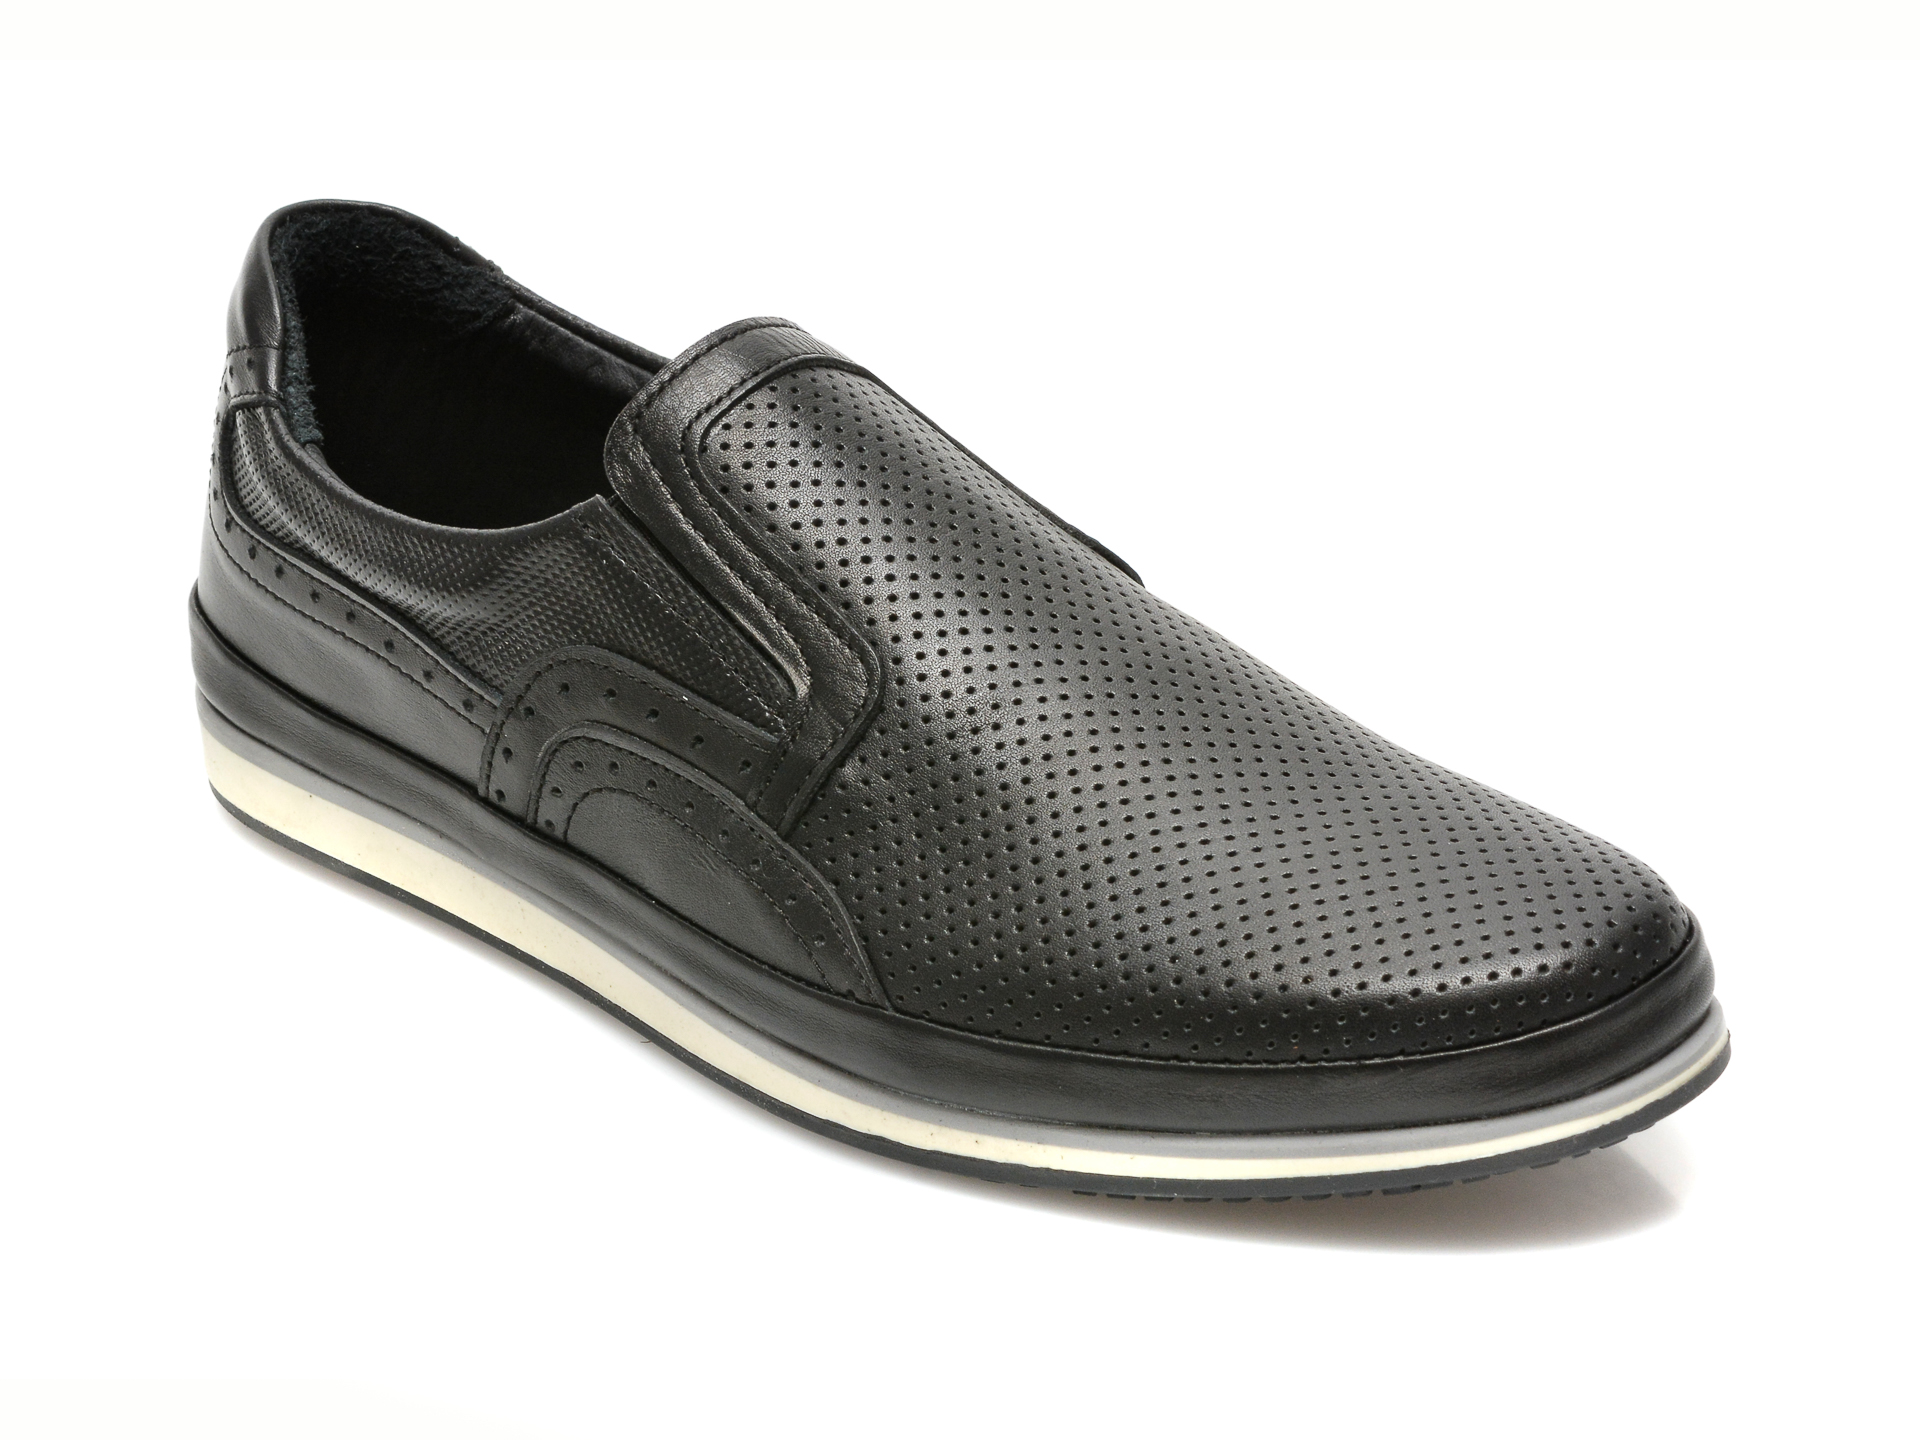 Pantofi OTTER negri, M5500, din piele naturala 2022 ❤️ Pret Super Black Friday otter.ro imagine noua 2022